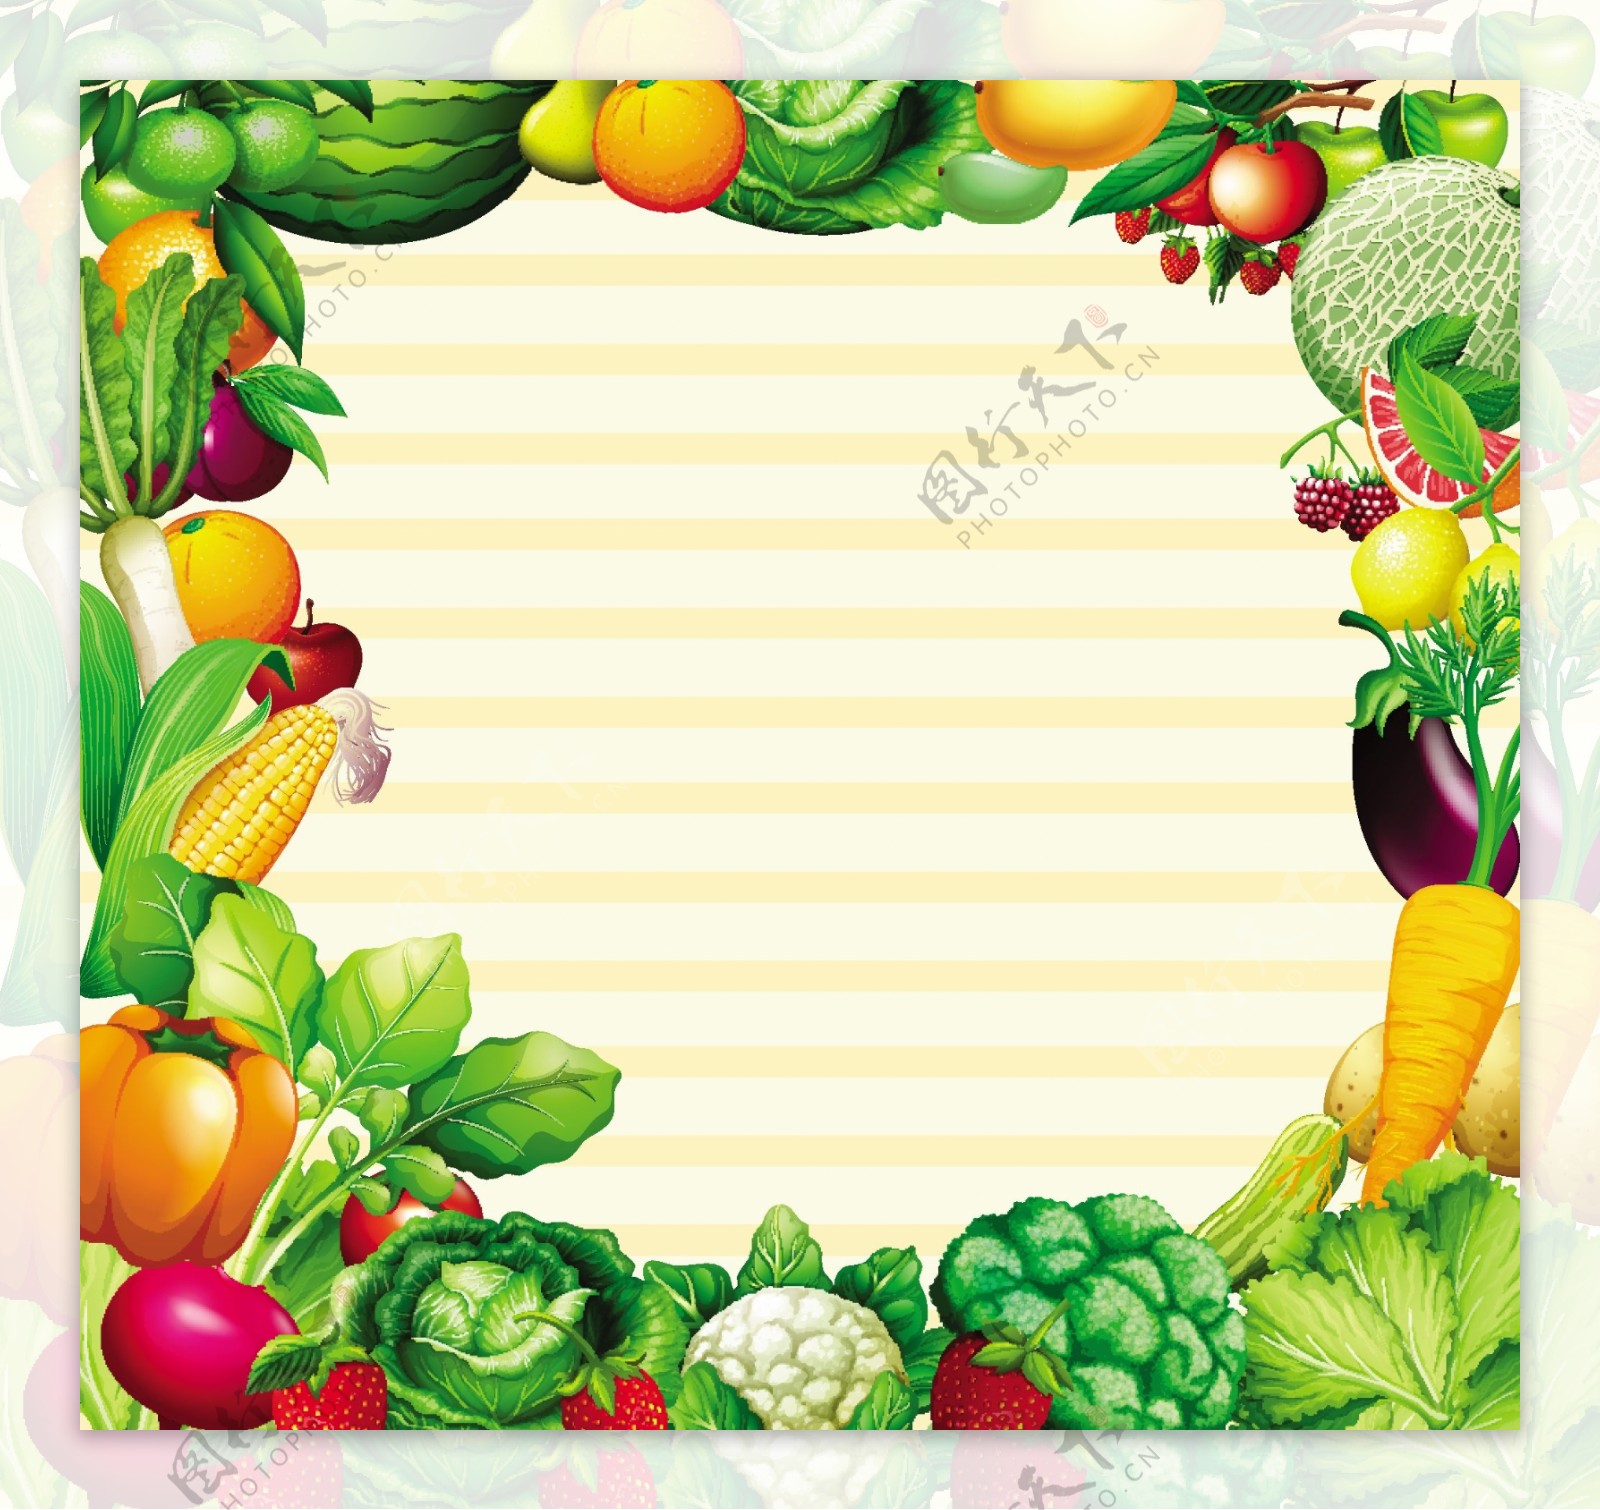 蔬菜水果插图框架设计